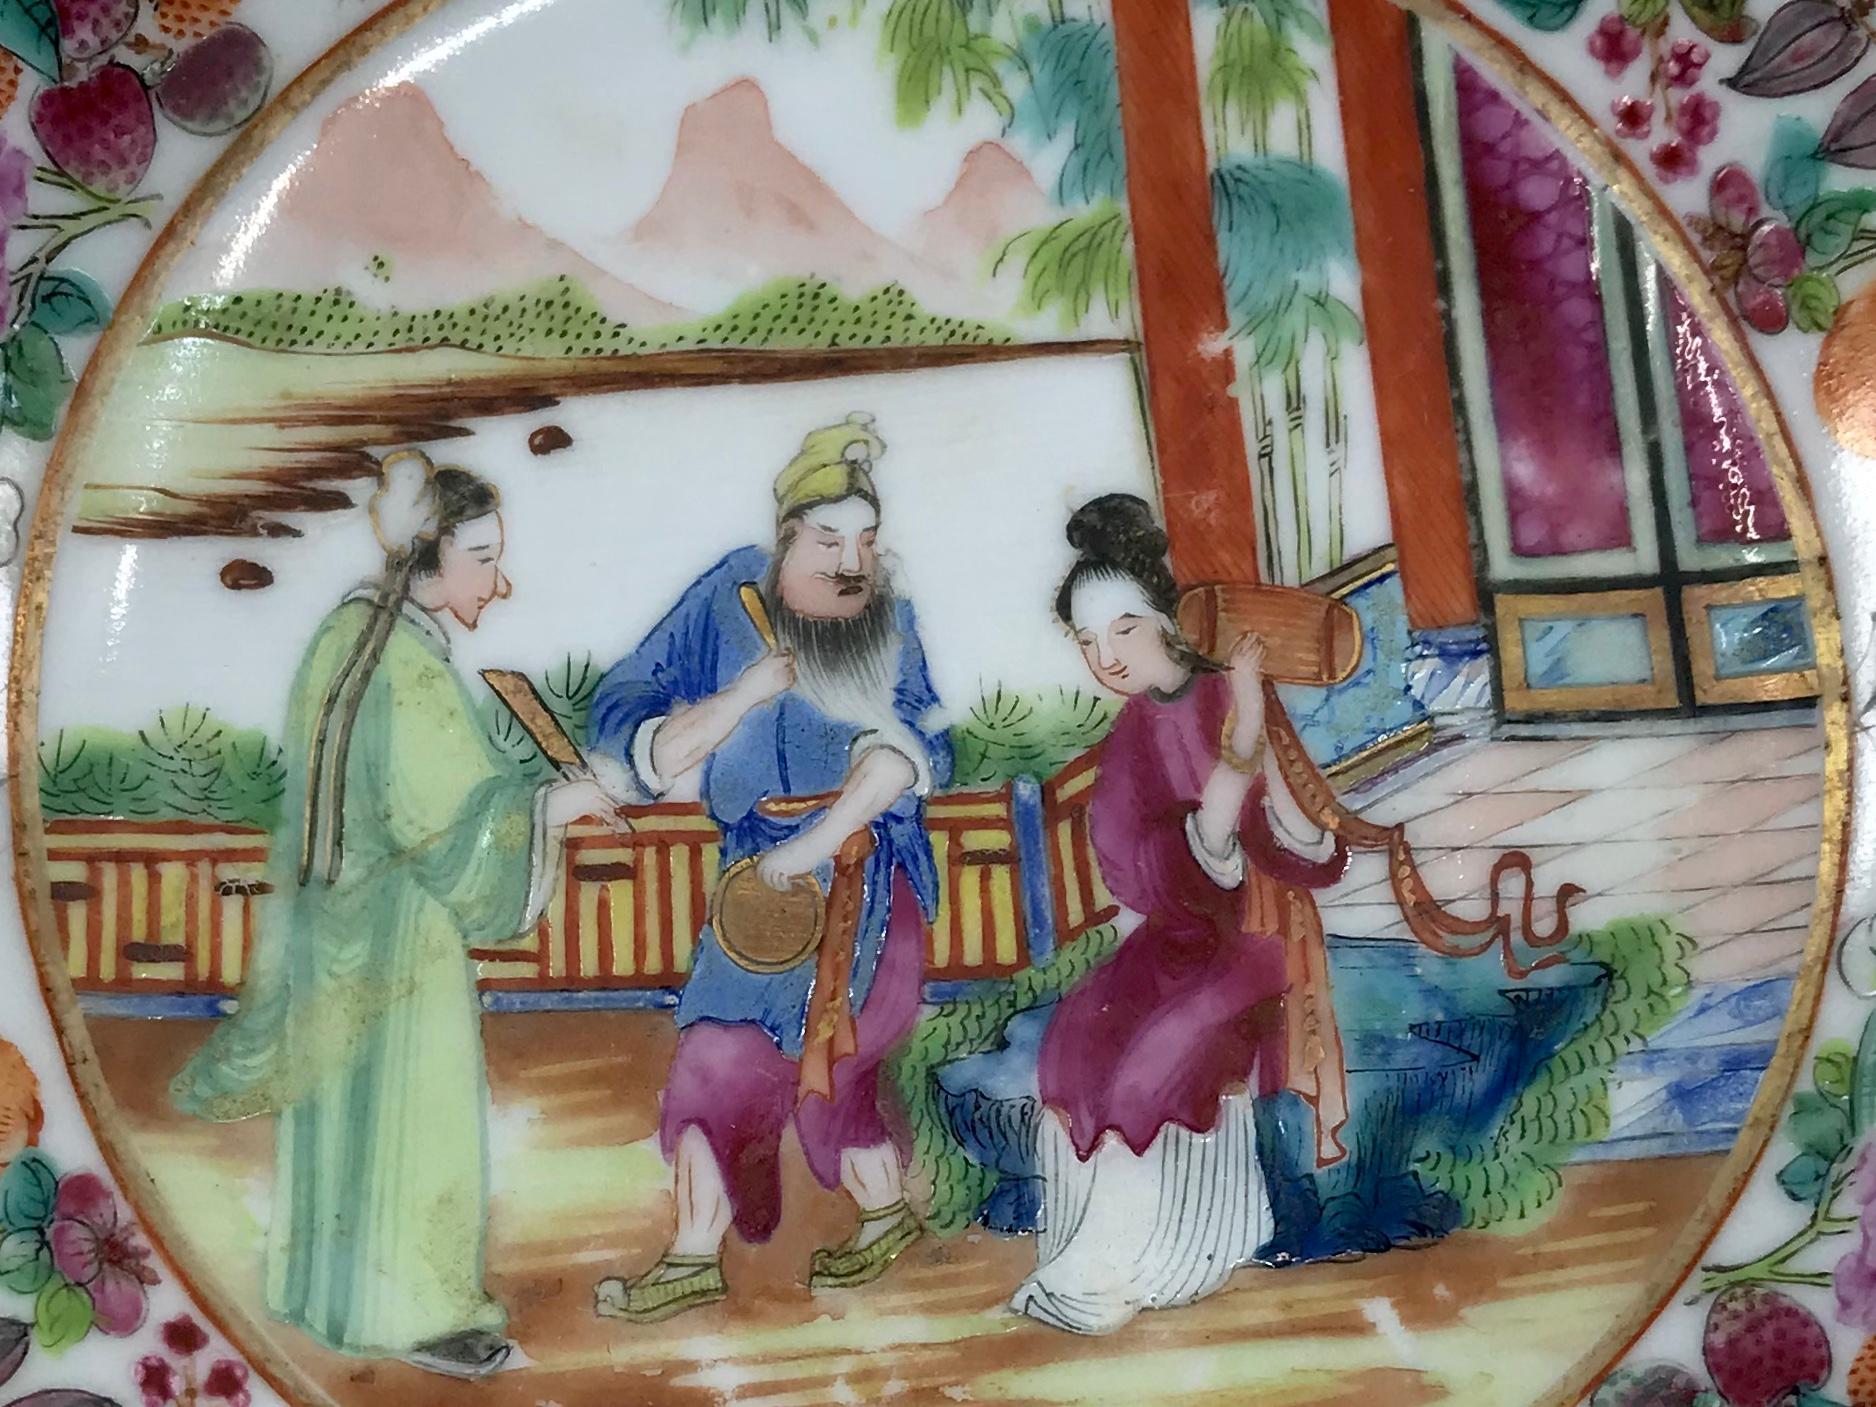 Plat à soucoupe en porcelaine chinoise Rose Mandarin. Petite assiette soucoupe d'exportation chinoise aux couleurs vives, dans les tons roses, bleus et verts. Chine, vers 1820 
Dimensions : 6